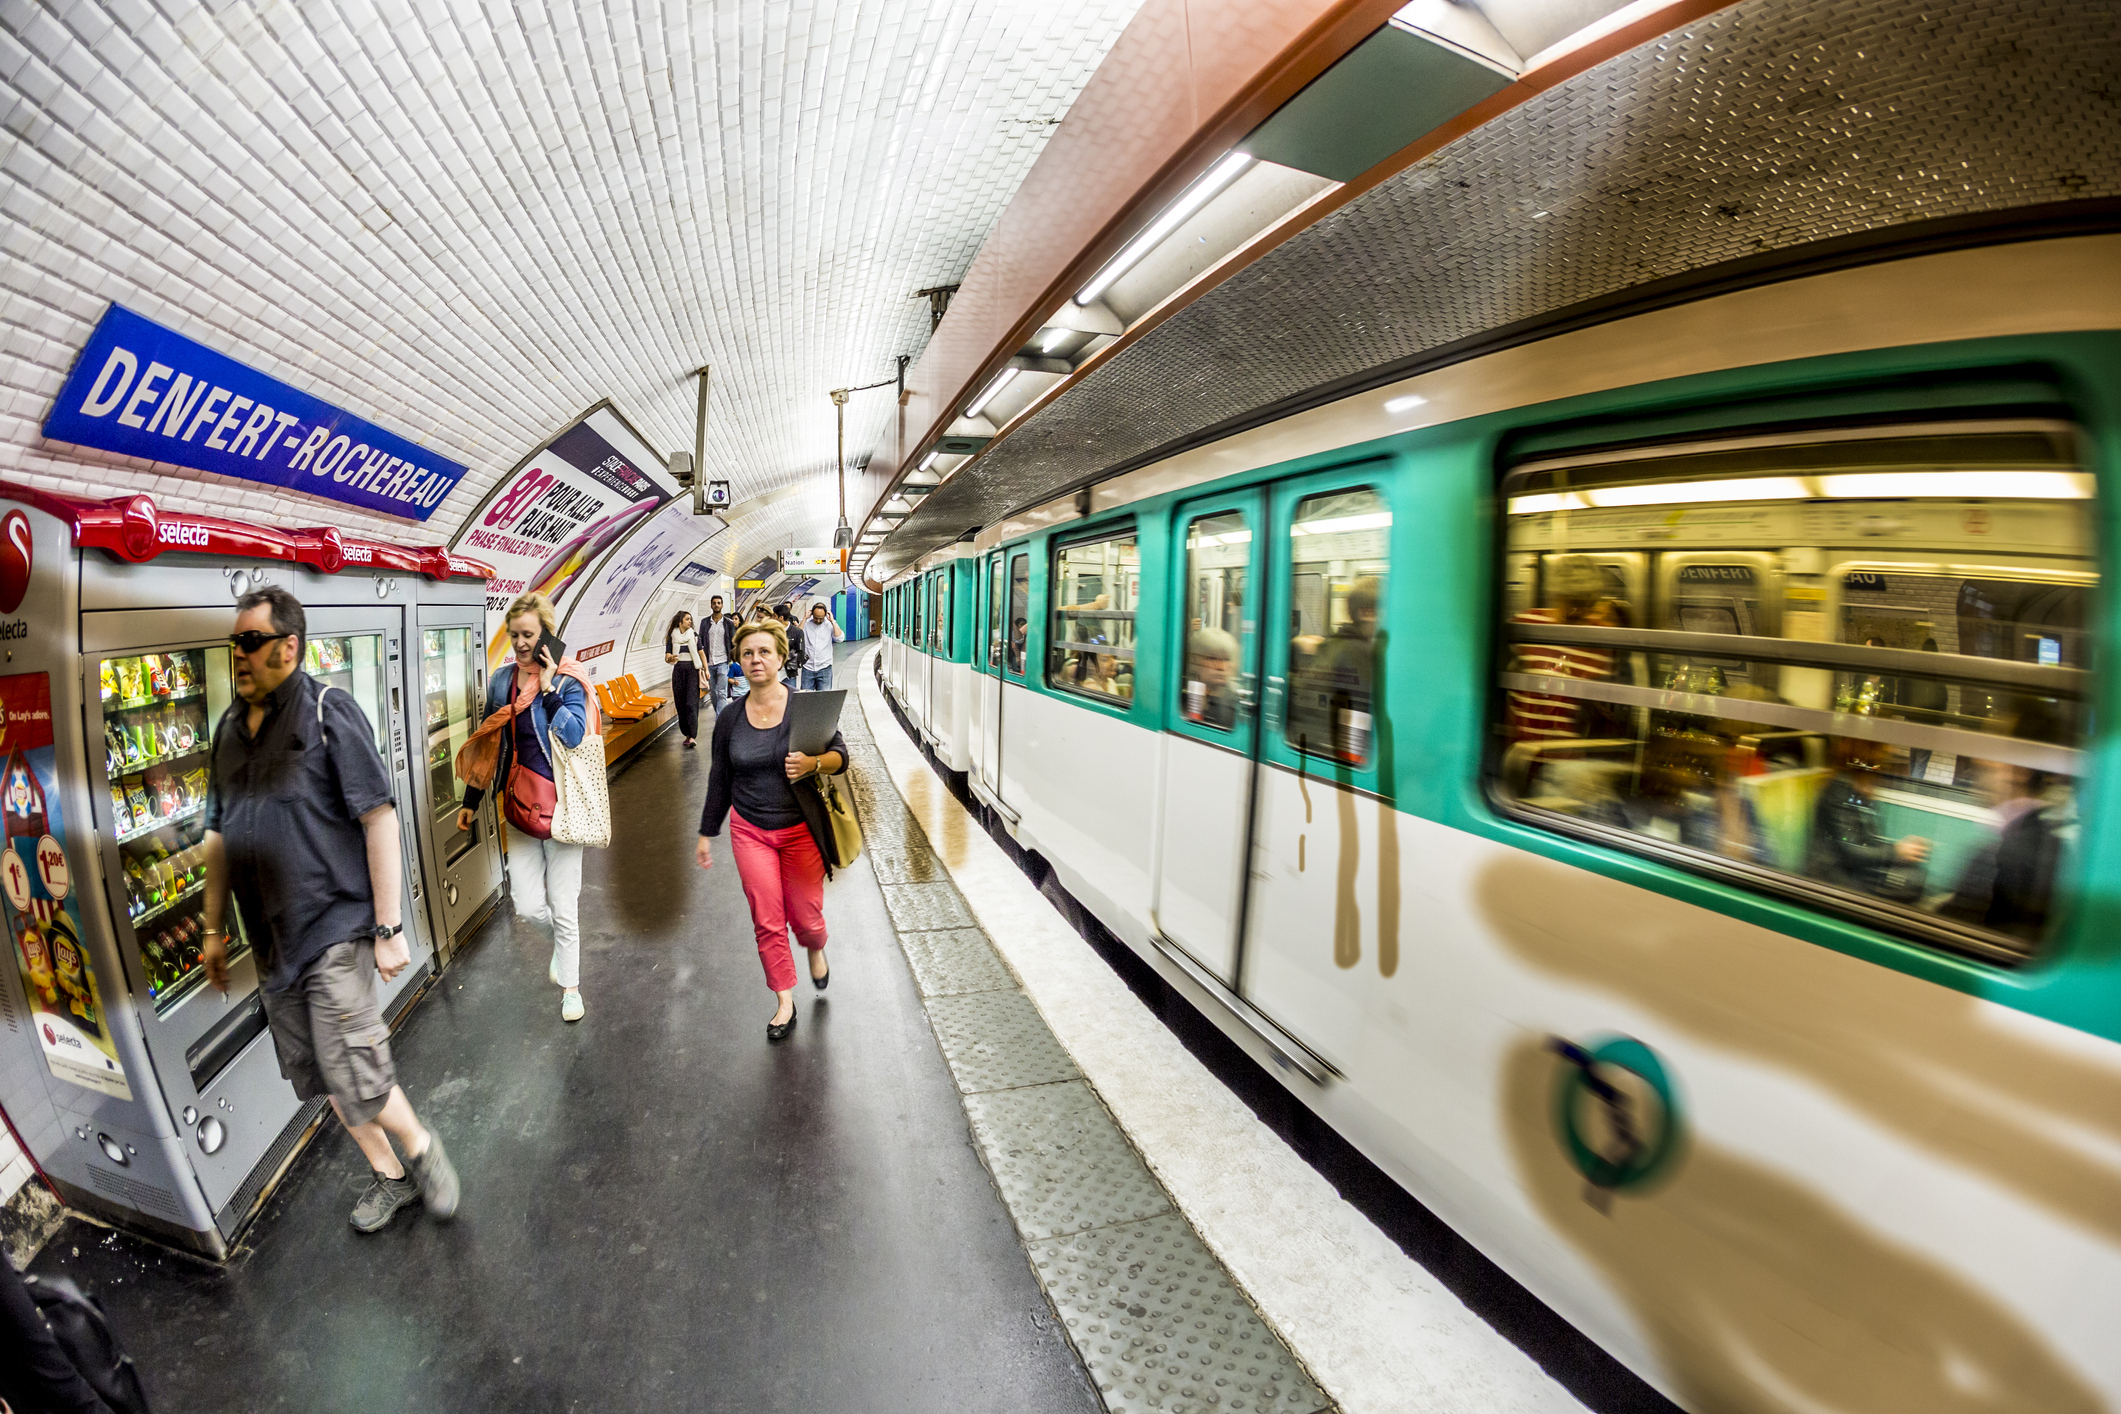 Grève du 10 novembre : le trafic devrait être très perturbé dans les métros et RER, selon la RATP